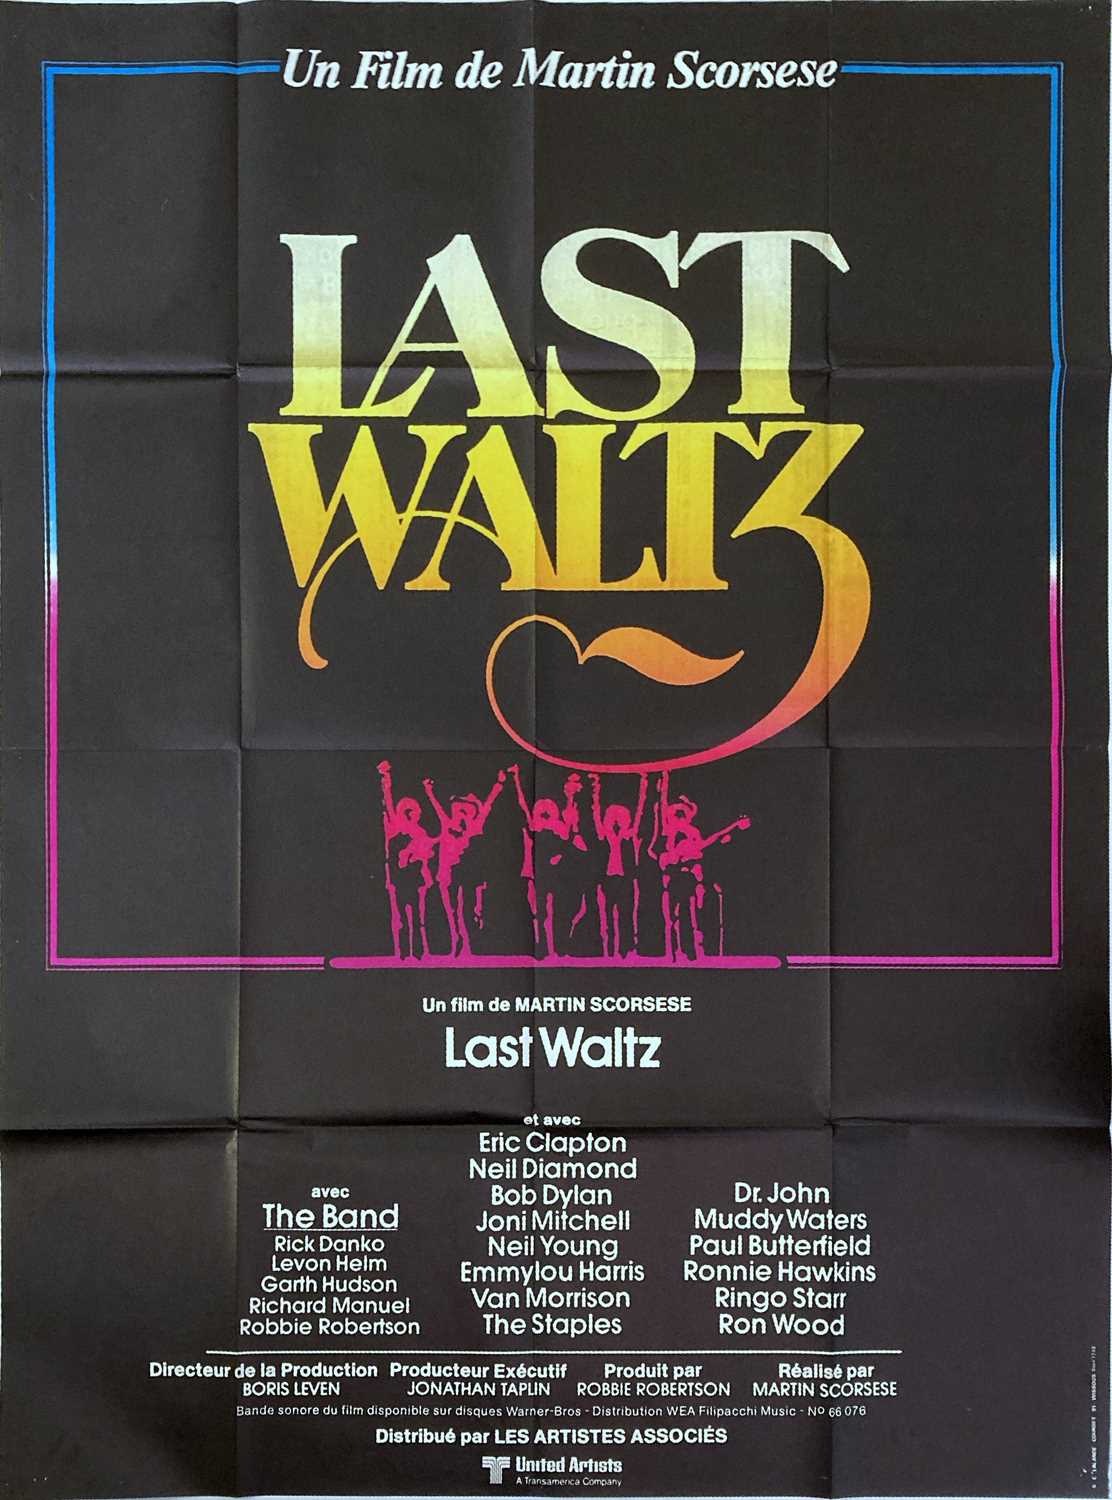 Lot 175 - THE LAST WALTZ POSTER AND FILM STILLS.